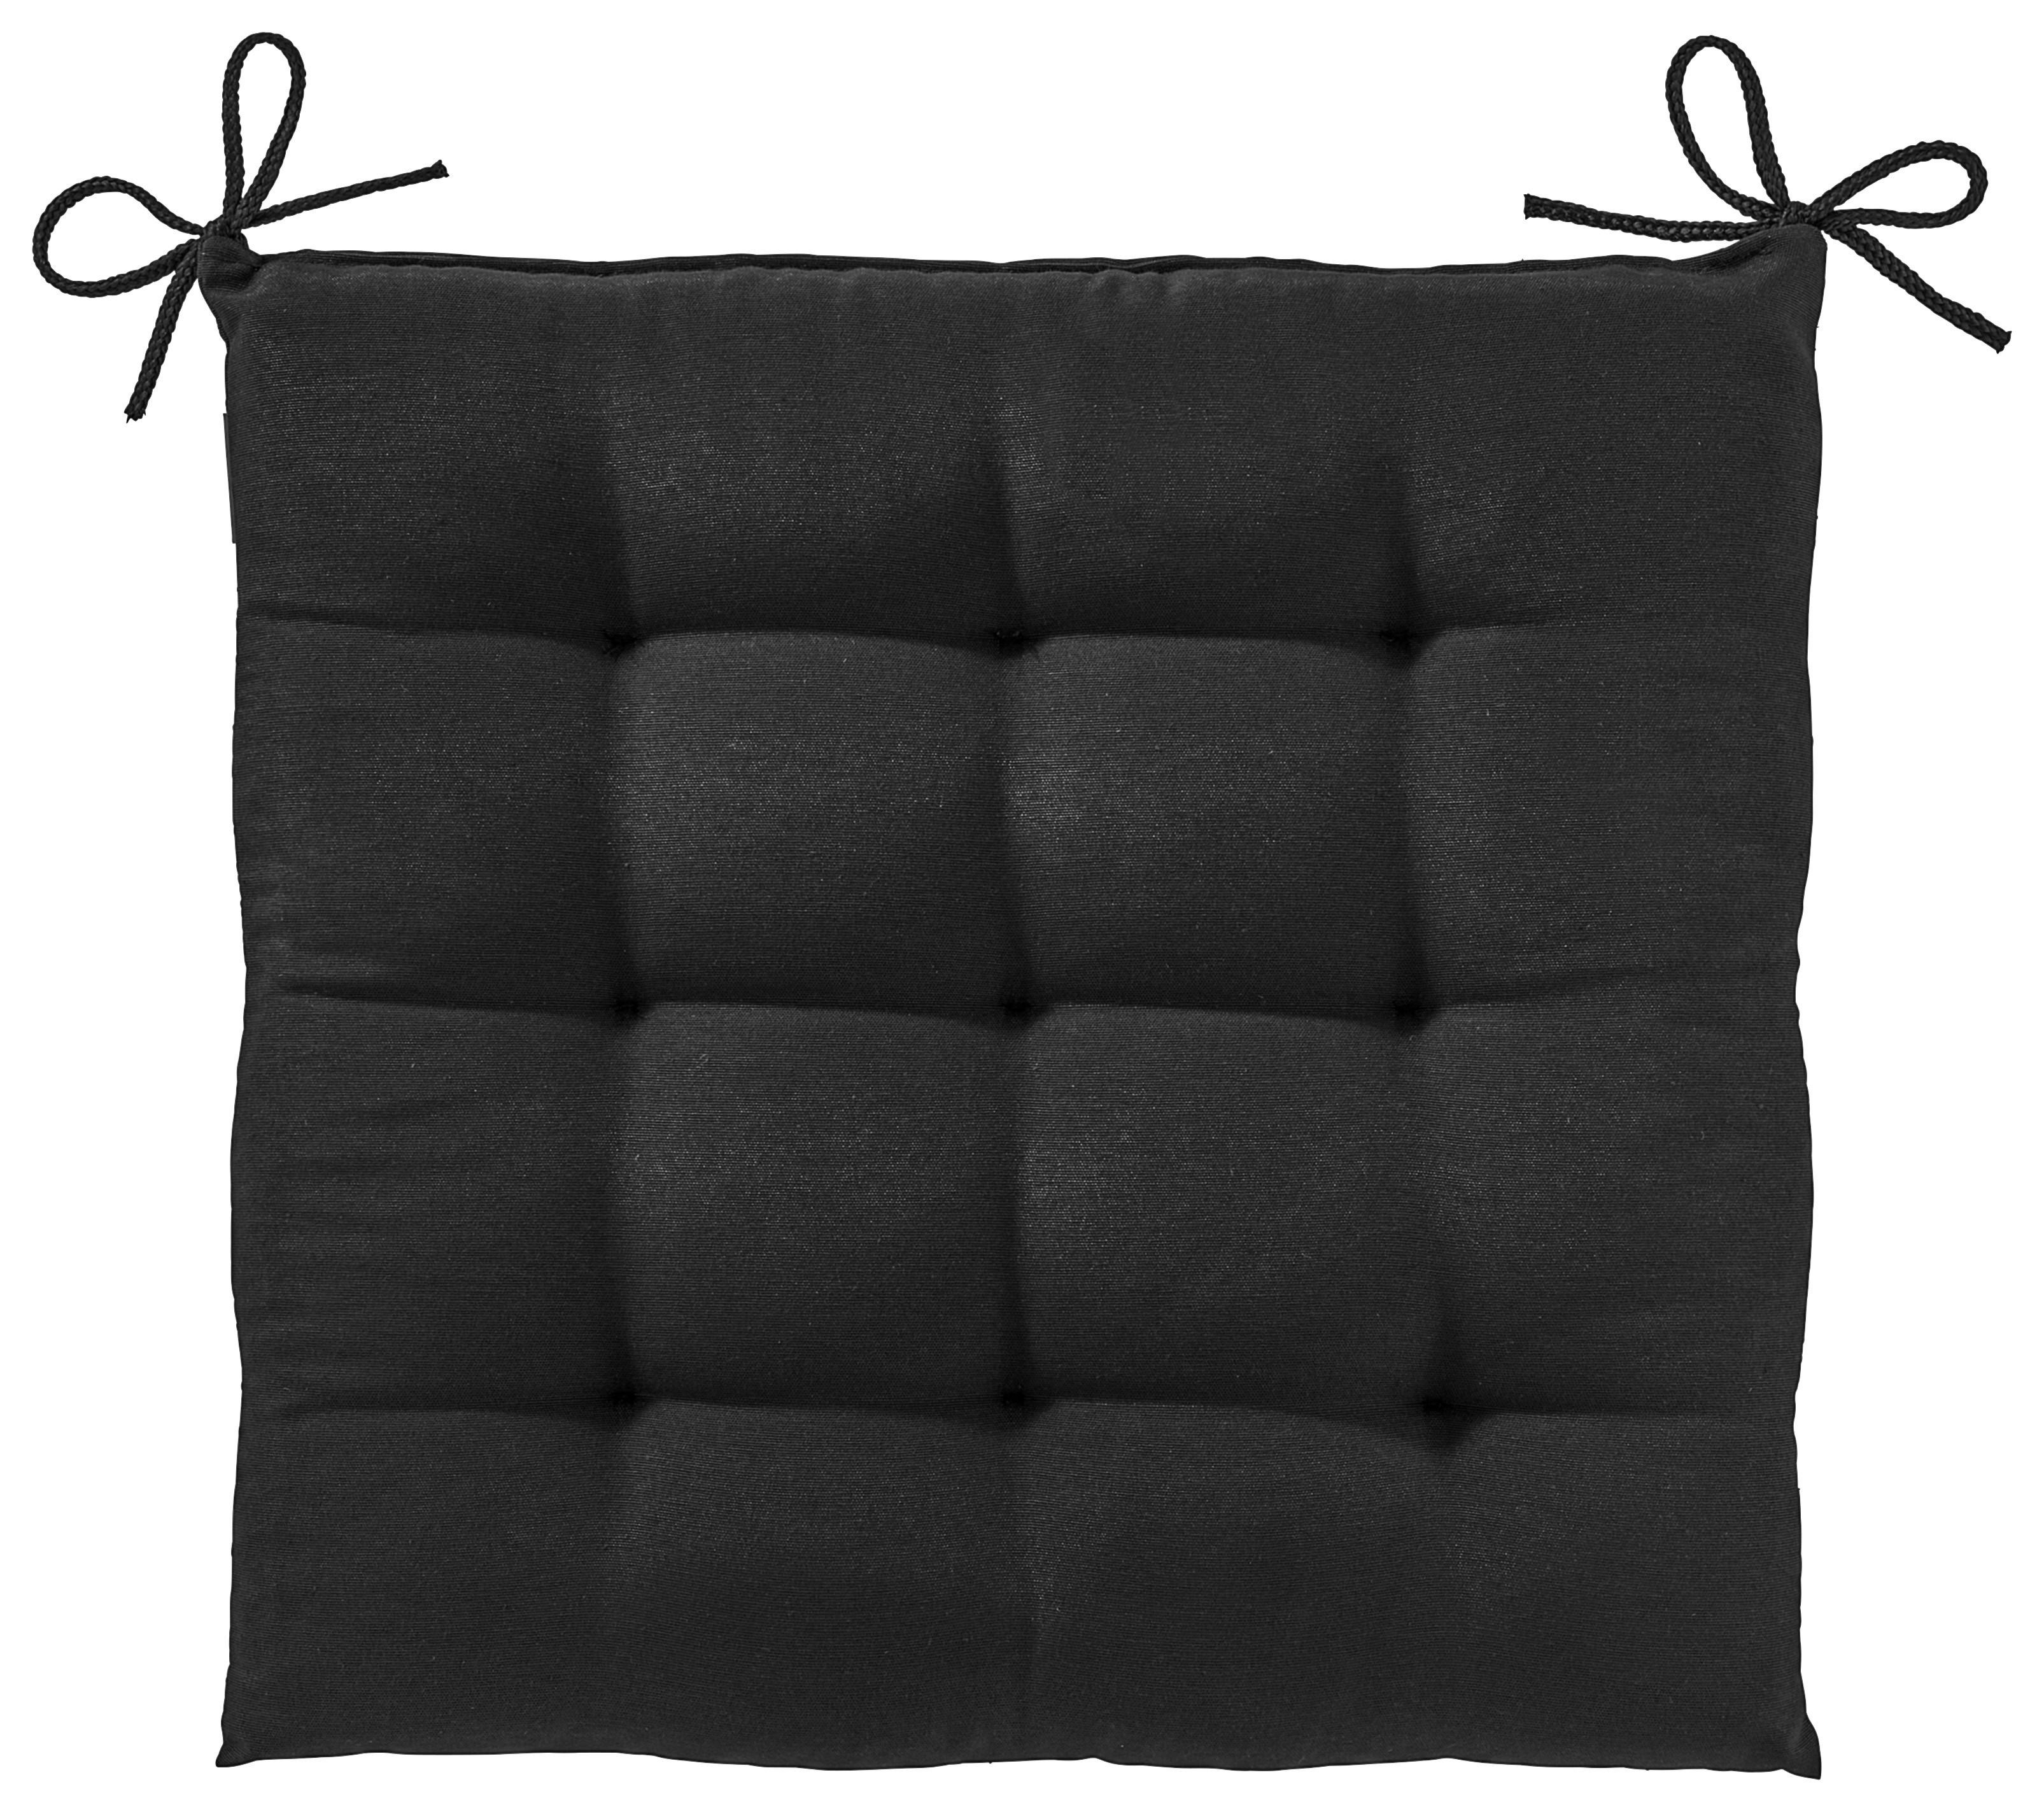 Poduška Na Sedenie Anita, 40/40cm, Čierna - čierna, textil (40/40/4cm) - Modern Living